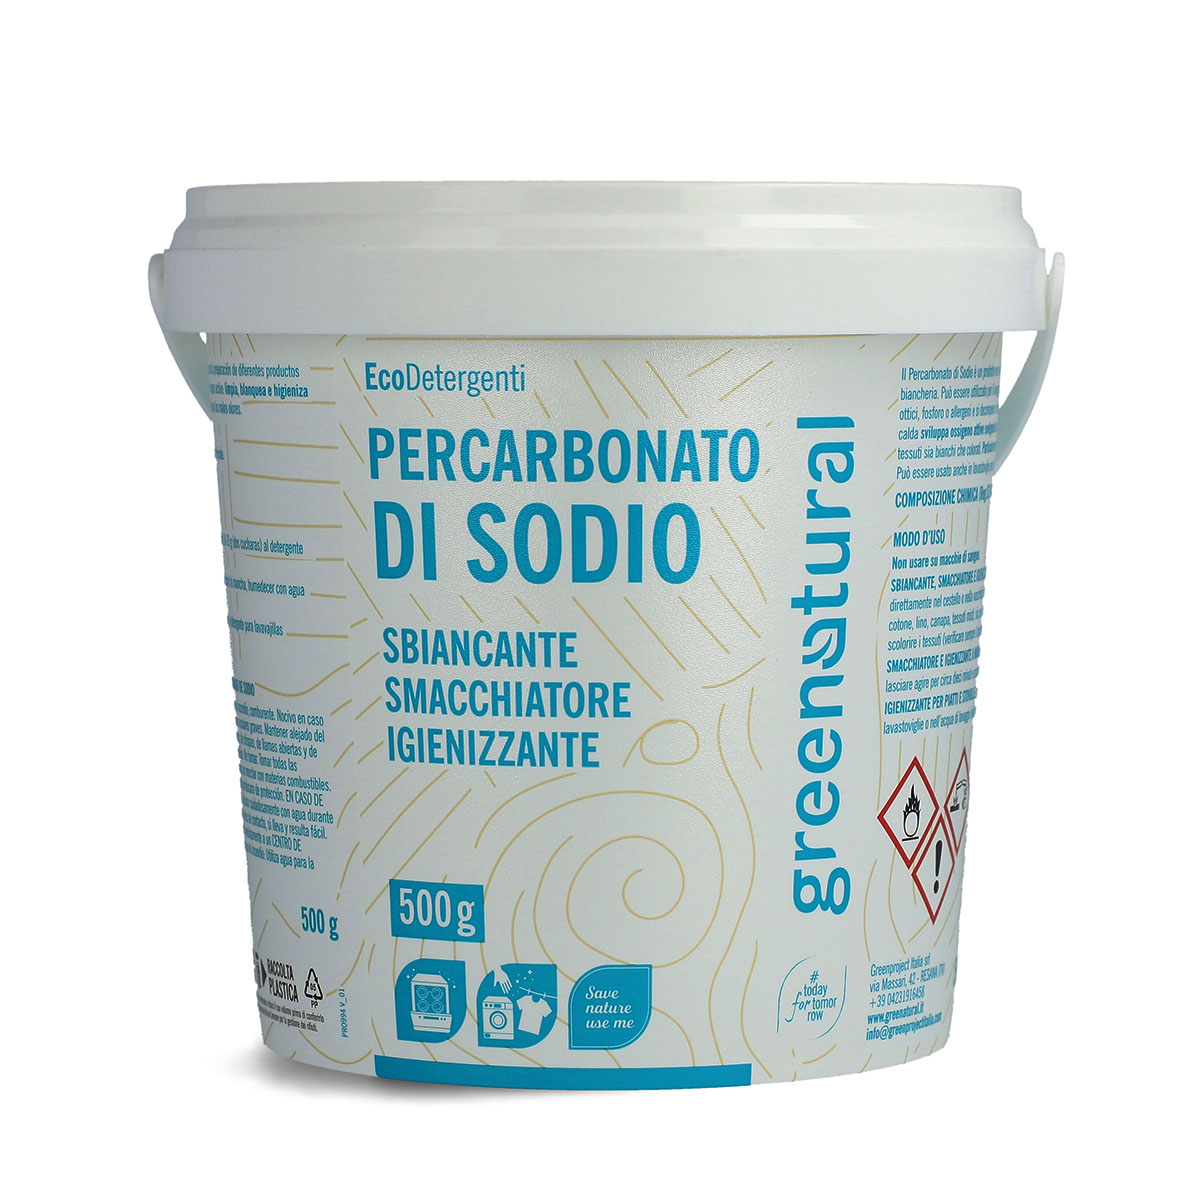 Percarbonato di sodio: sbiancante e igienizzante ecologico per il bucato -  ECOPENSARE